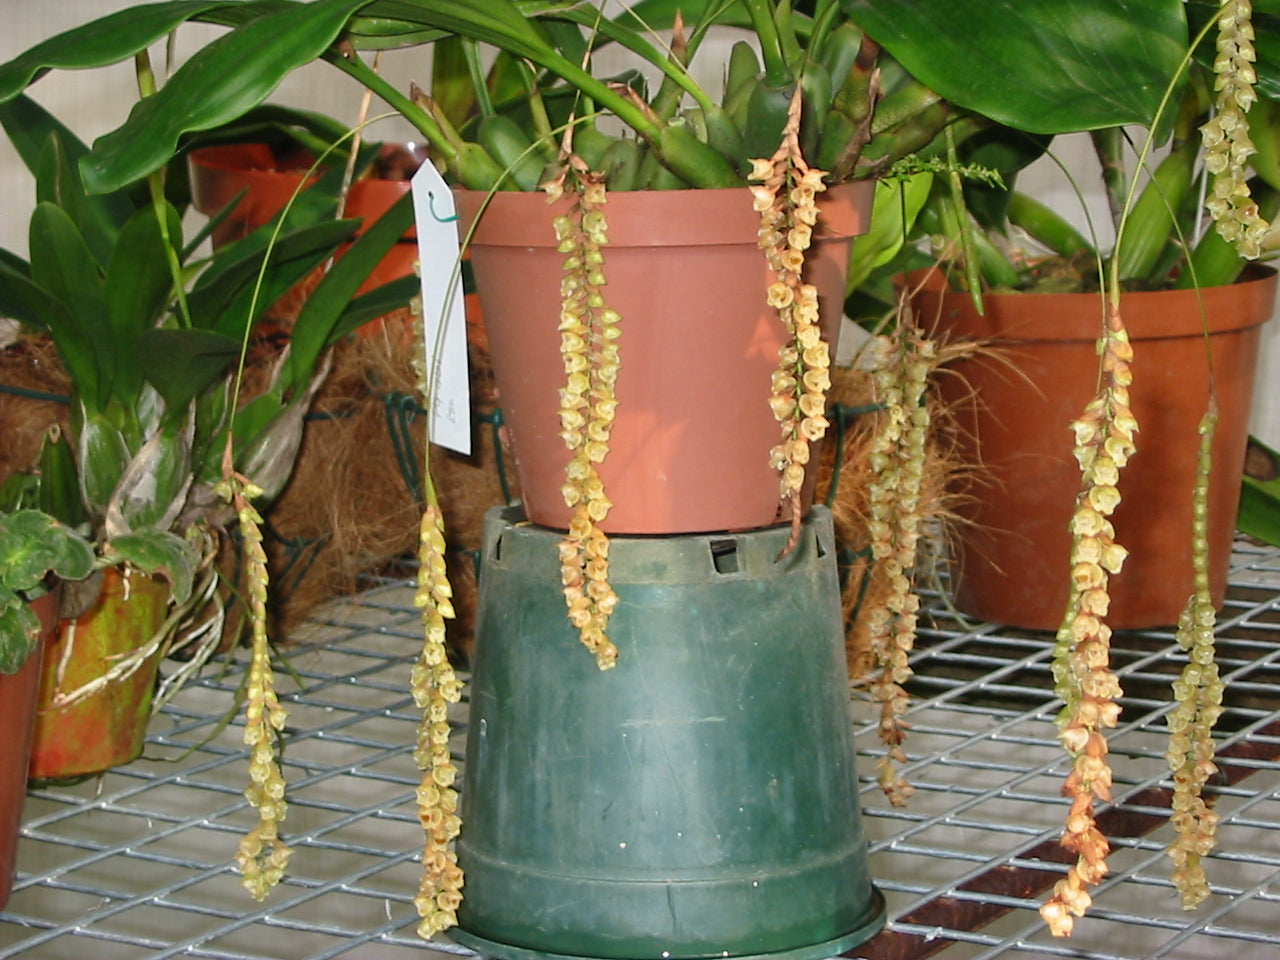 Pholidota umbricata. "Rattle Snake Orchid"